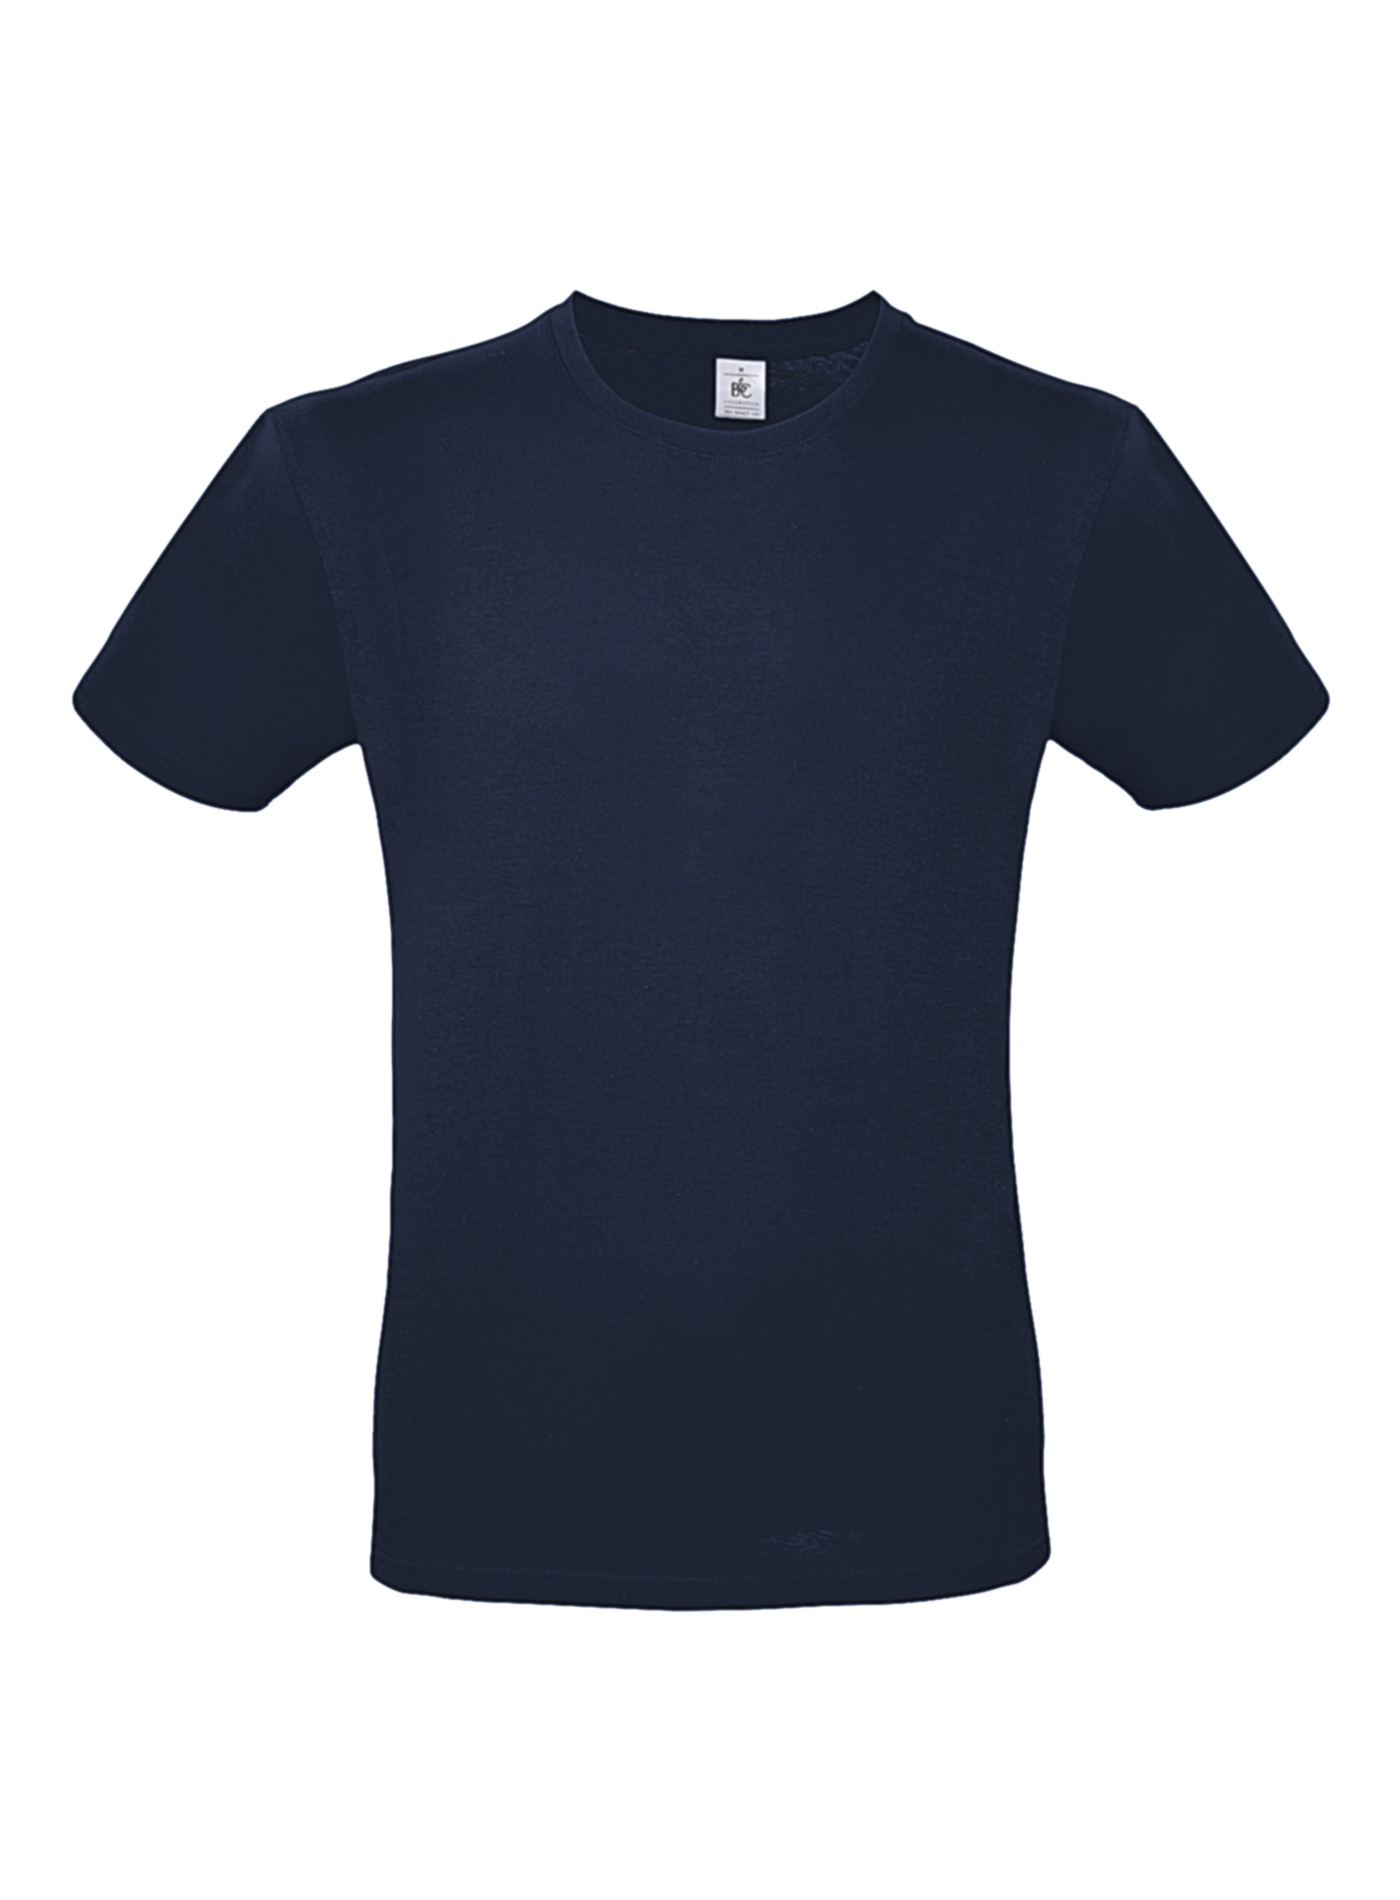 Pánské tričko B&C - Námořní modrá XL